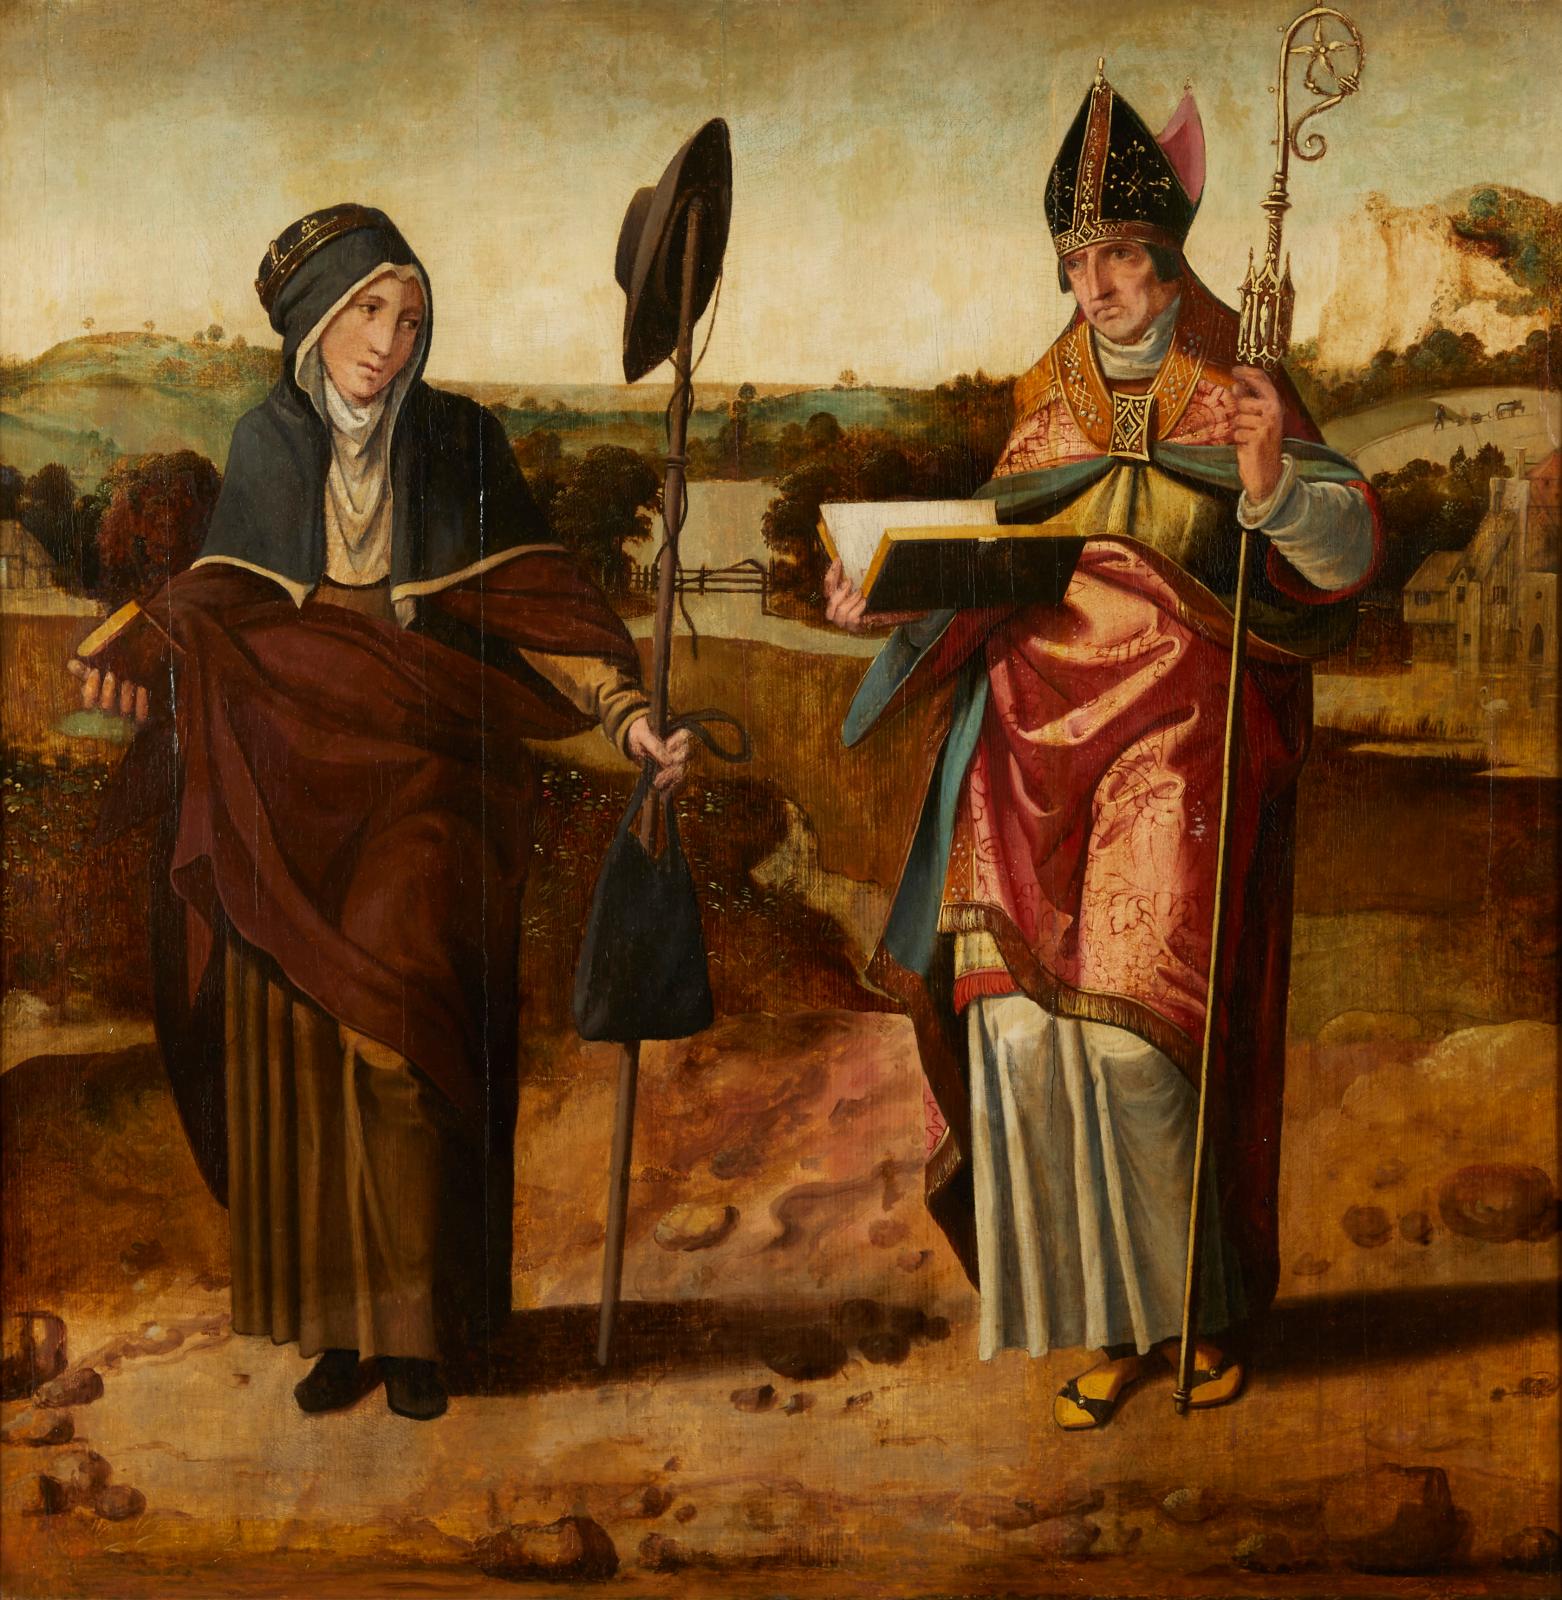 La peinture allemande aux premières heures de la Renaissance